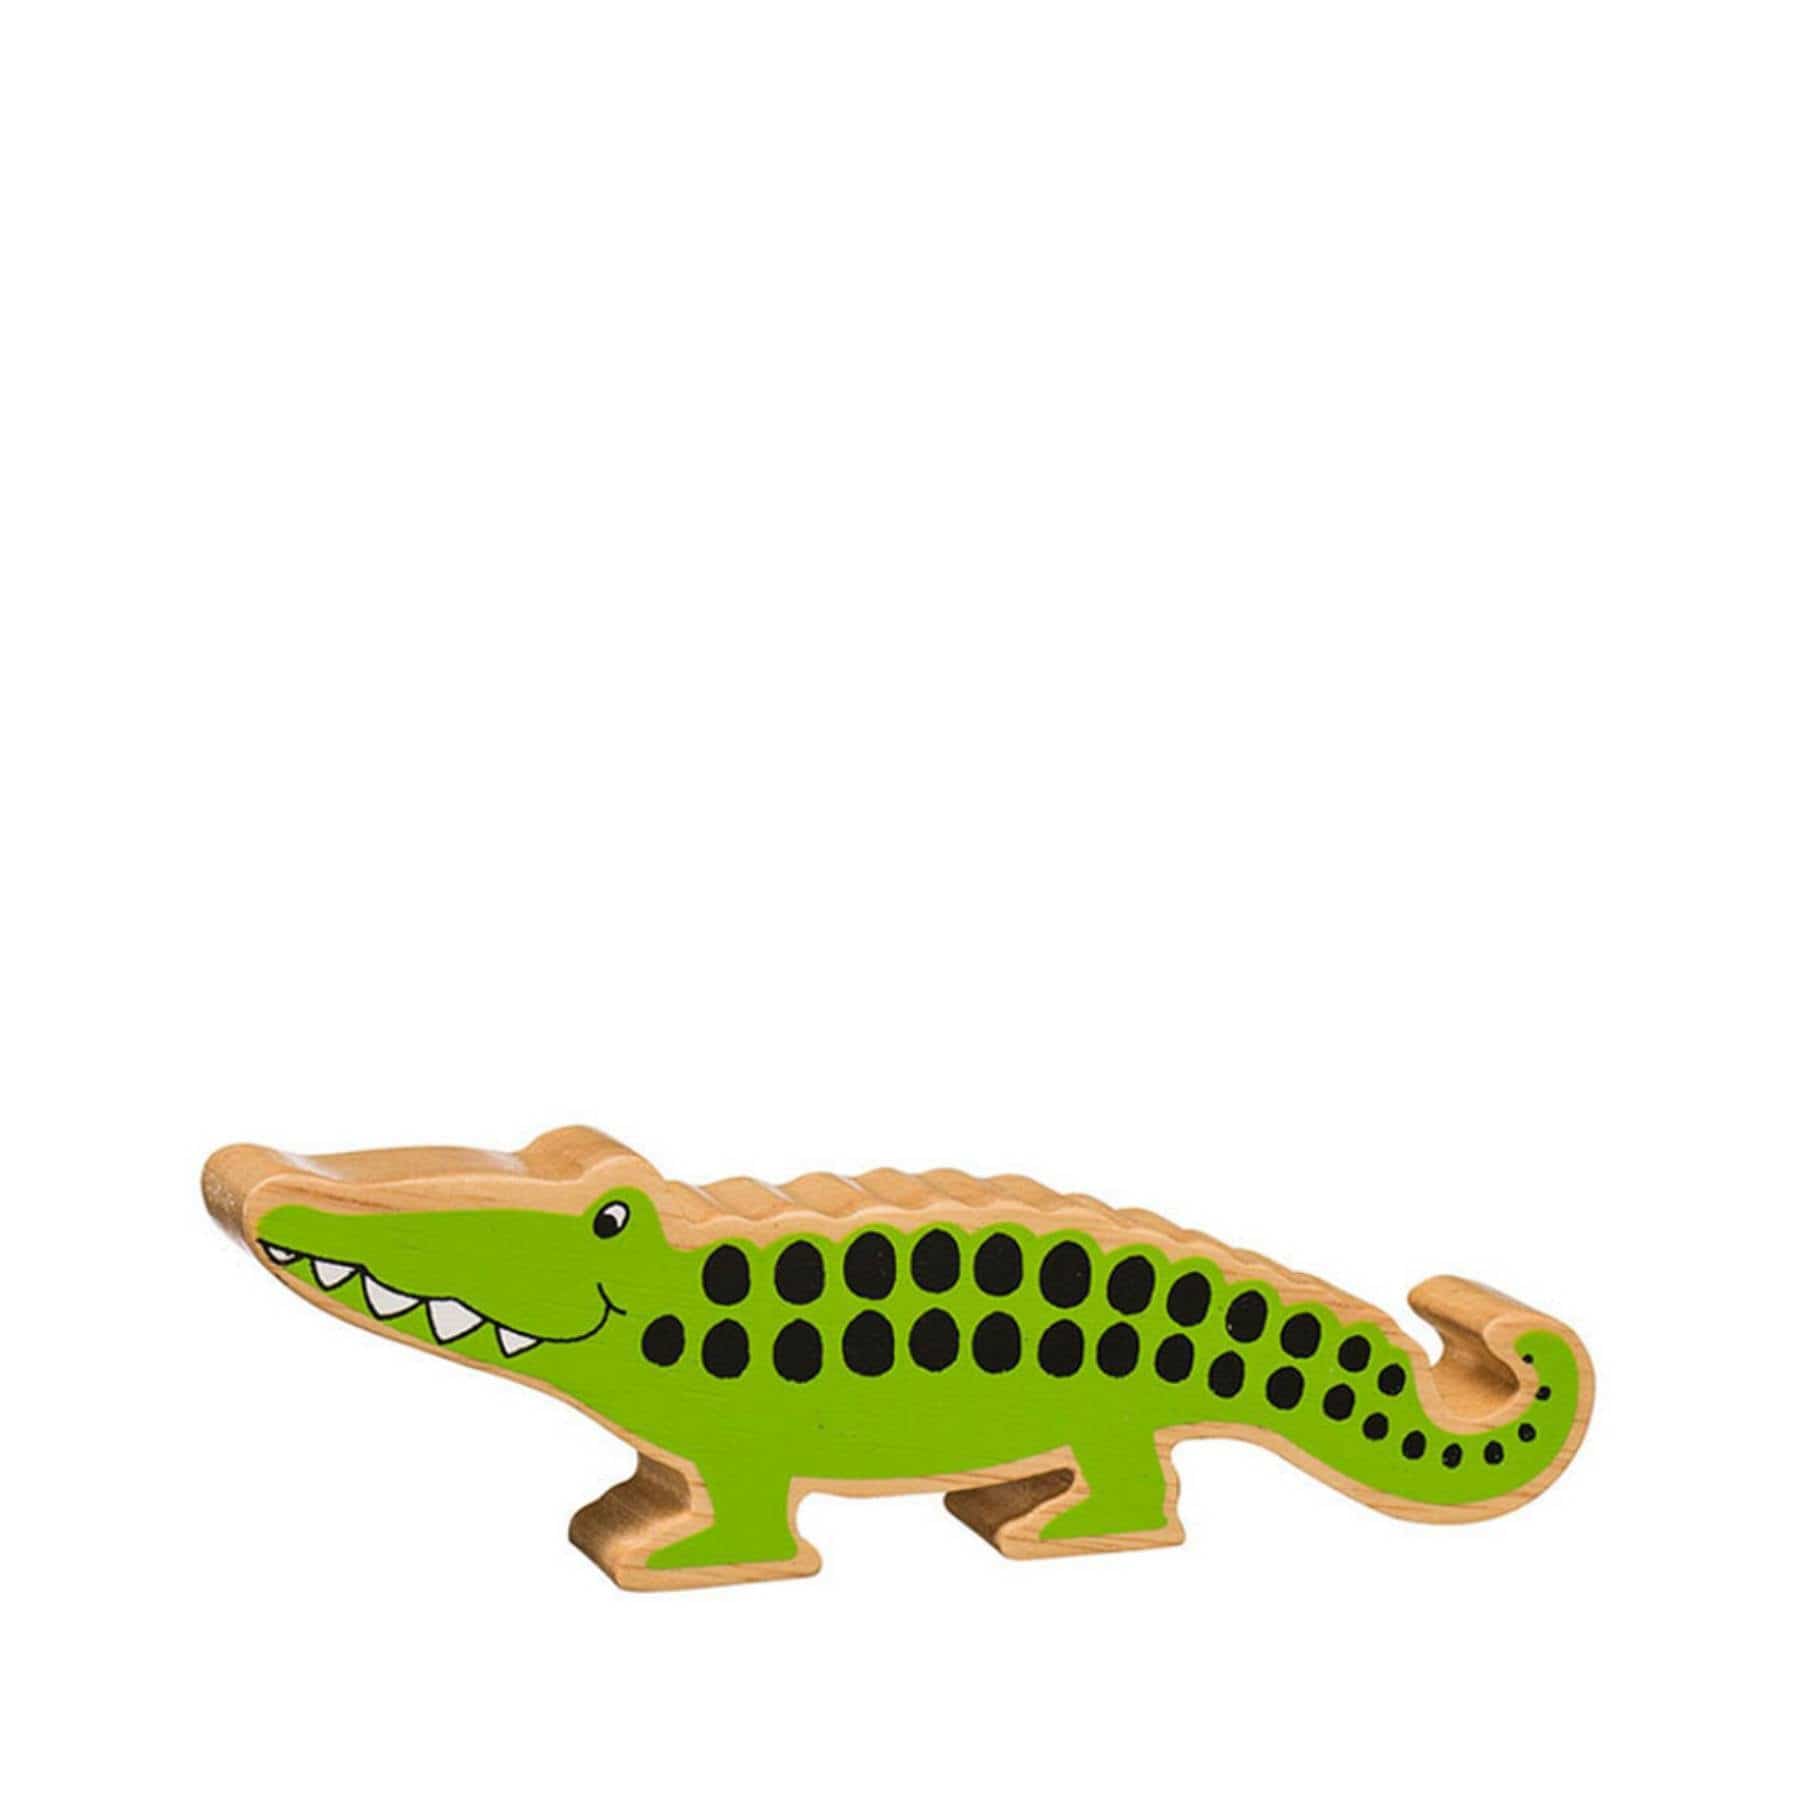 Wooden crocodile figure